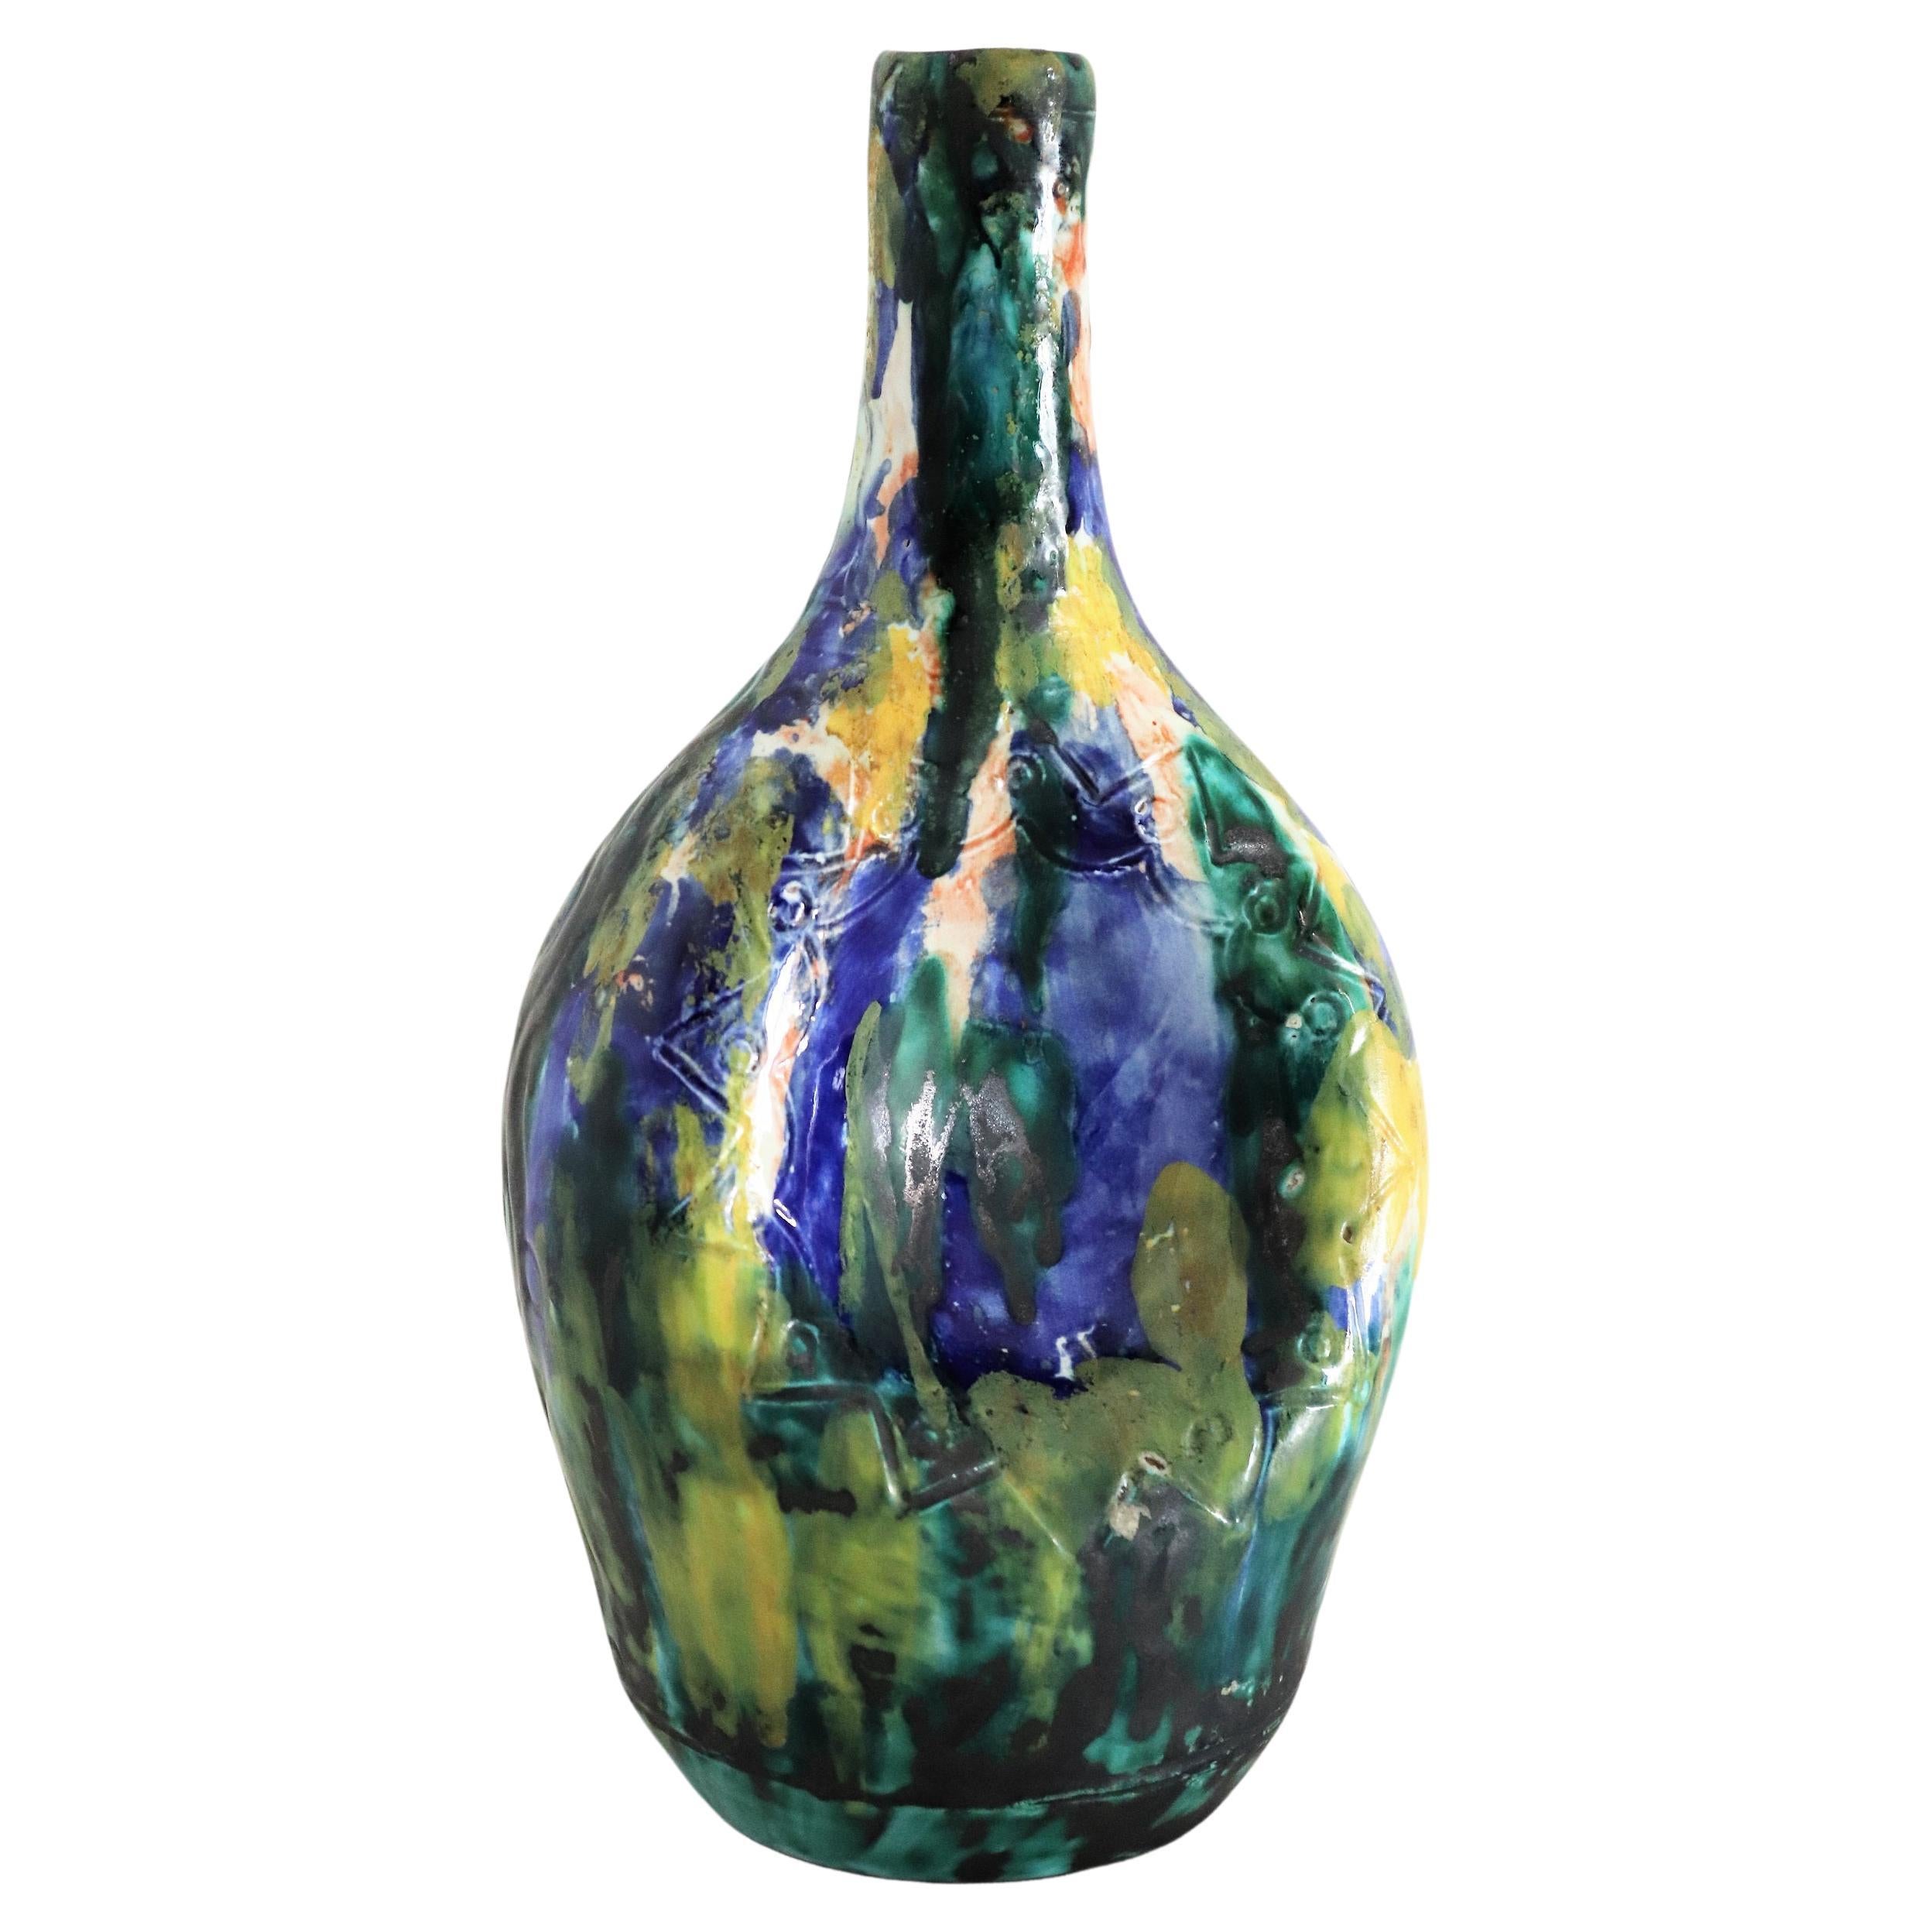 1950s Giuseppe Barile Albisola Italian Midcentury Modern Pottery Vase For Sale